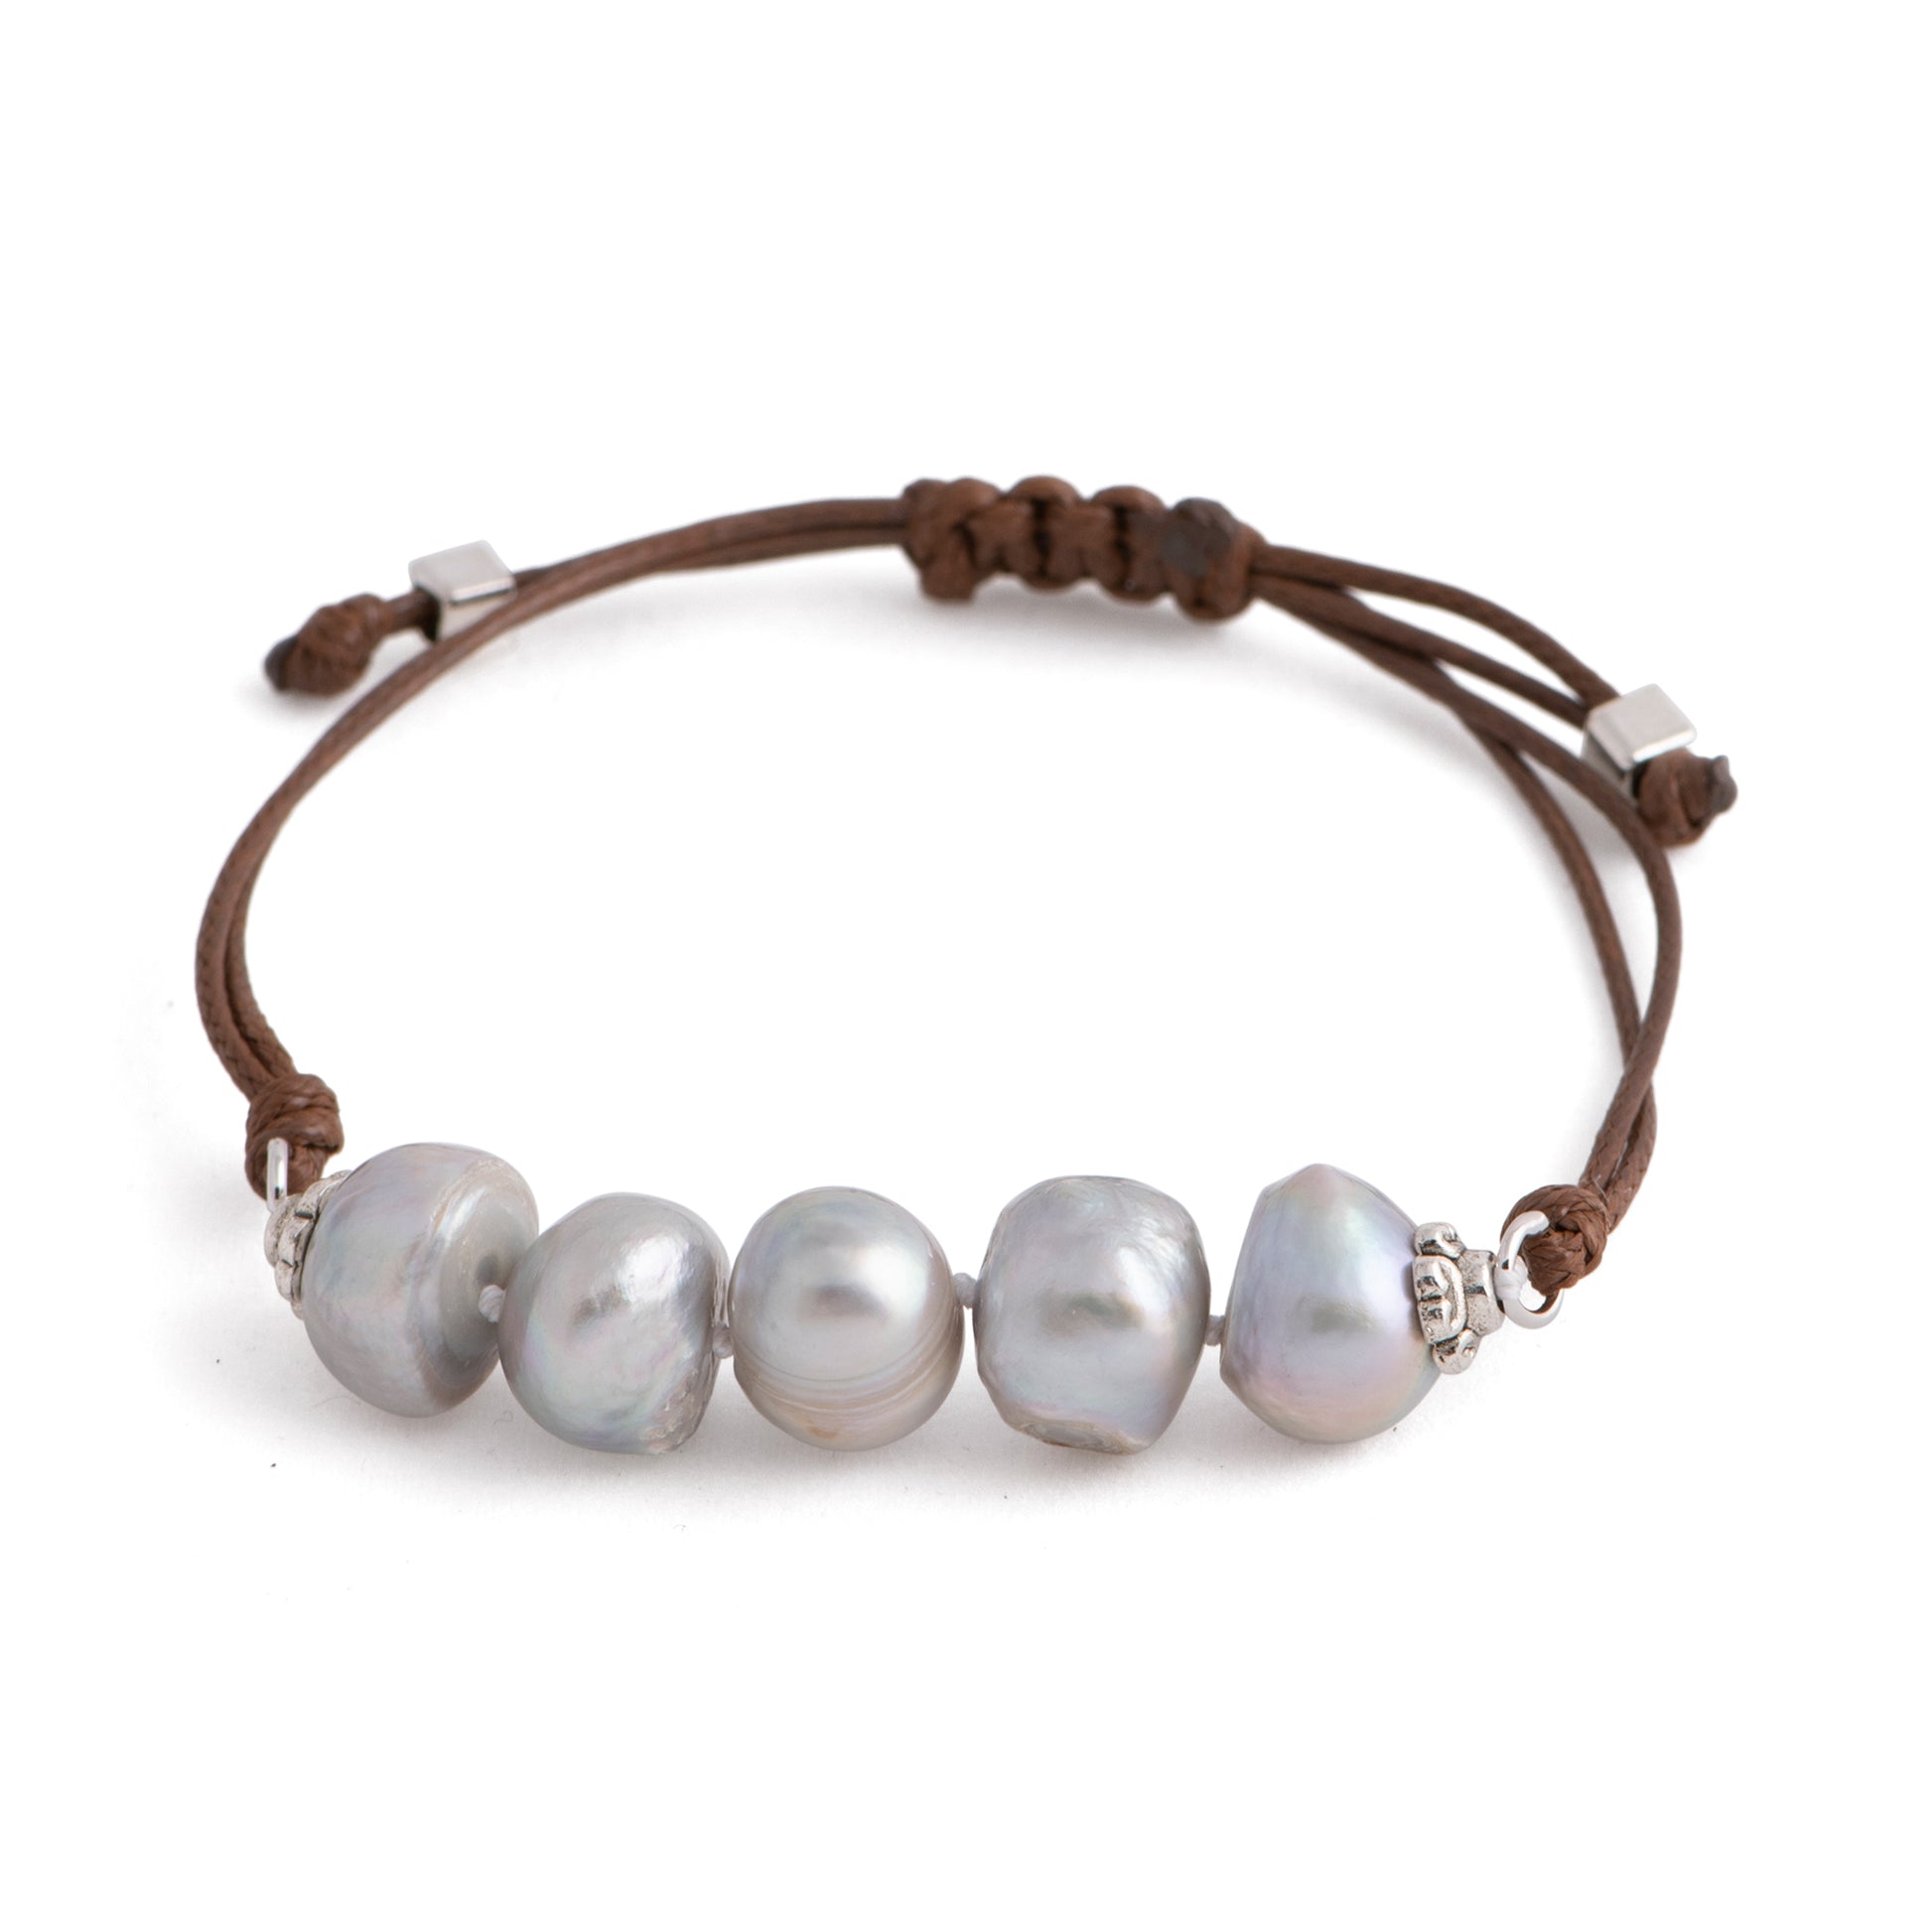 Aegean - Five freshwater pearl adjustable string bracelet (Dark brown strand, silver pearls)